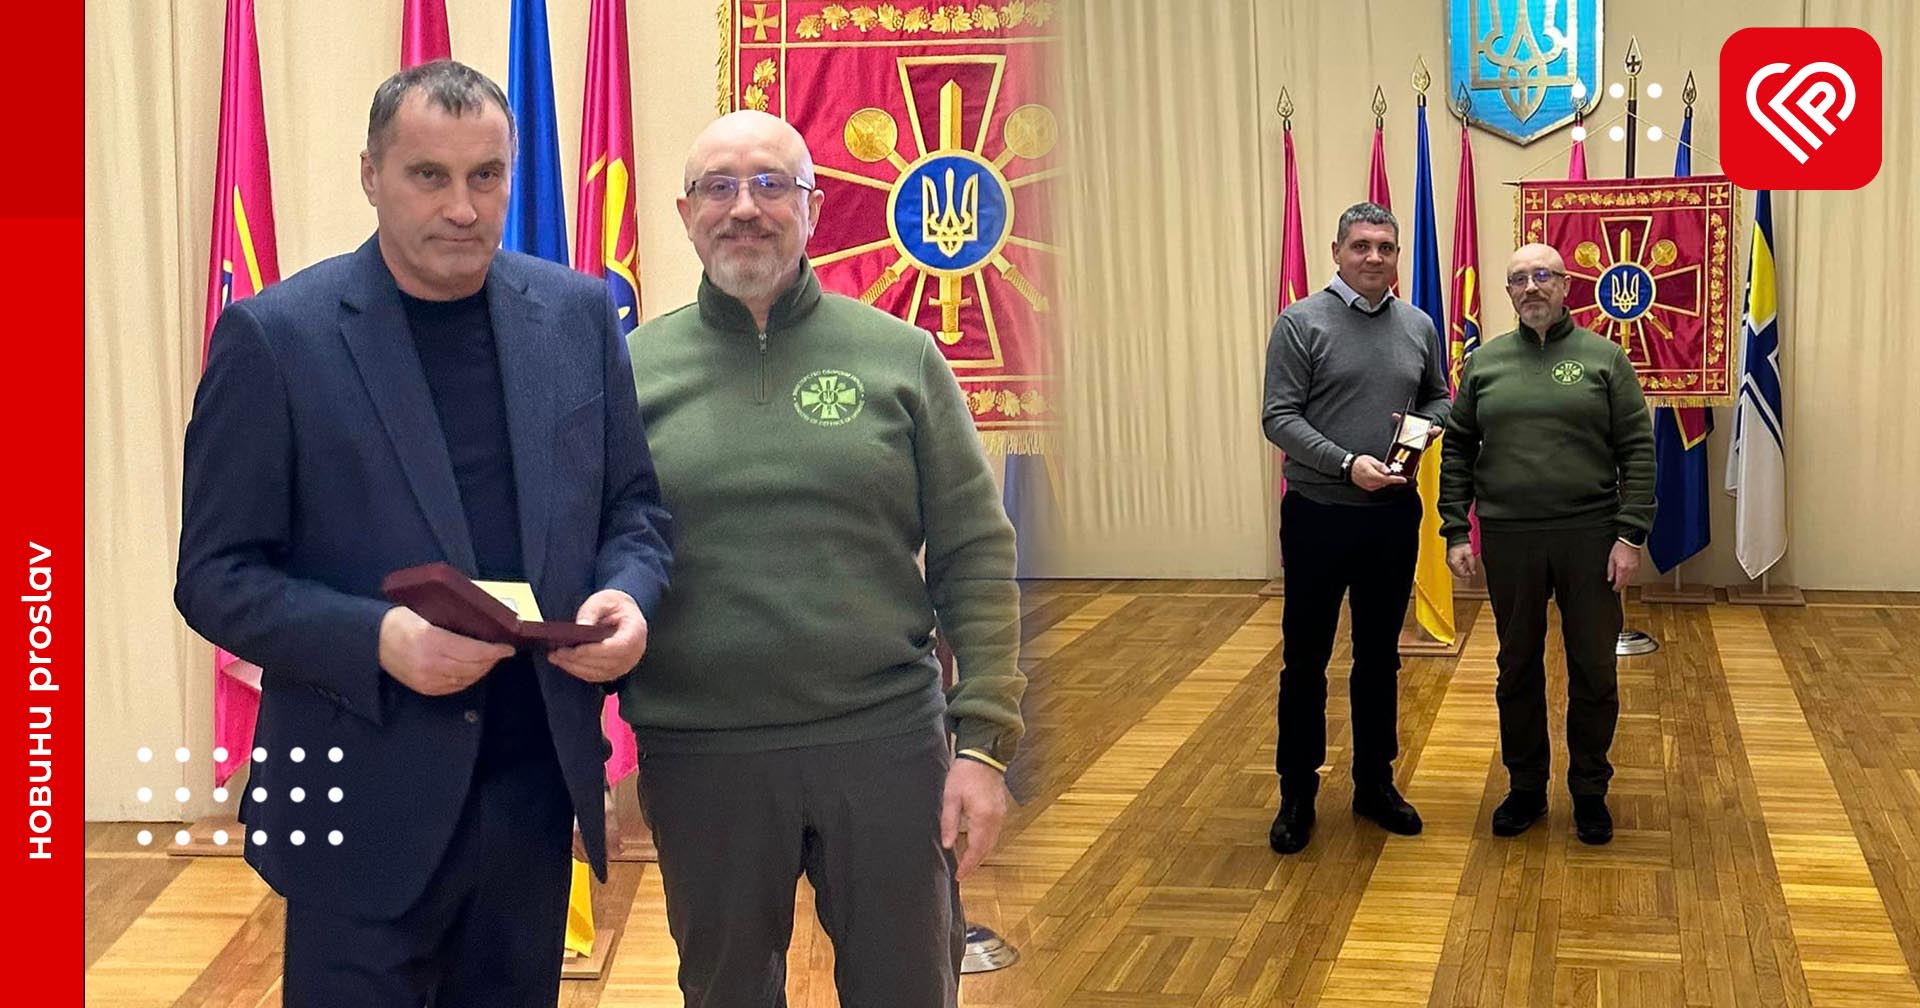 Резніков відзначив нагородами 60 мешканців Київщини: серед них є і жителі Переяславщини